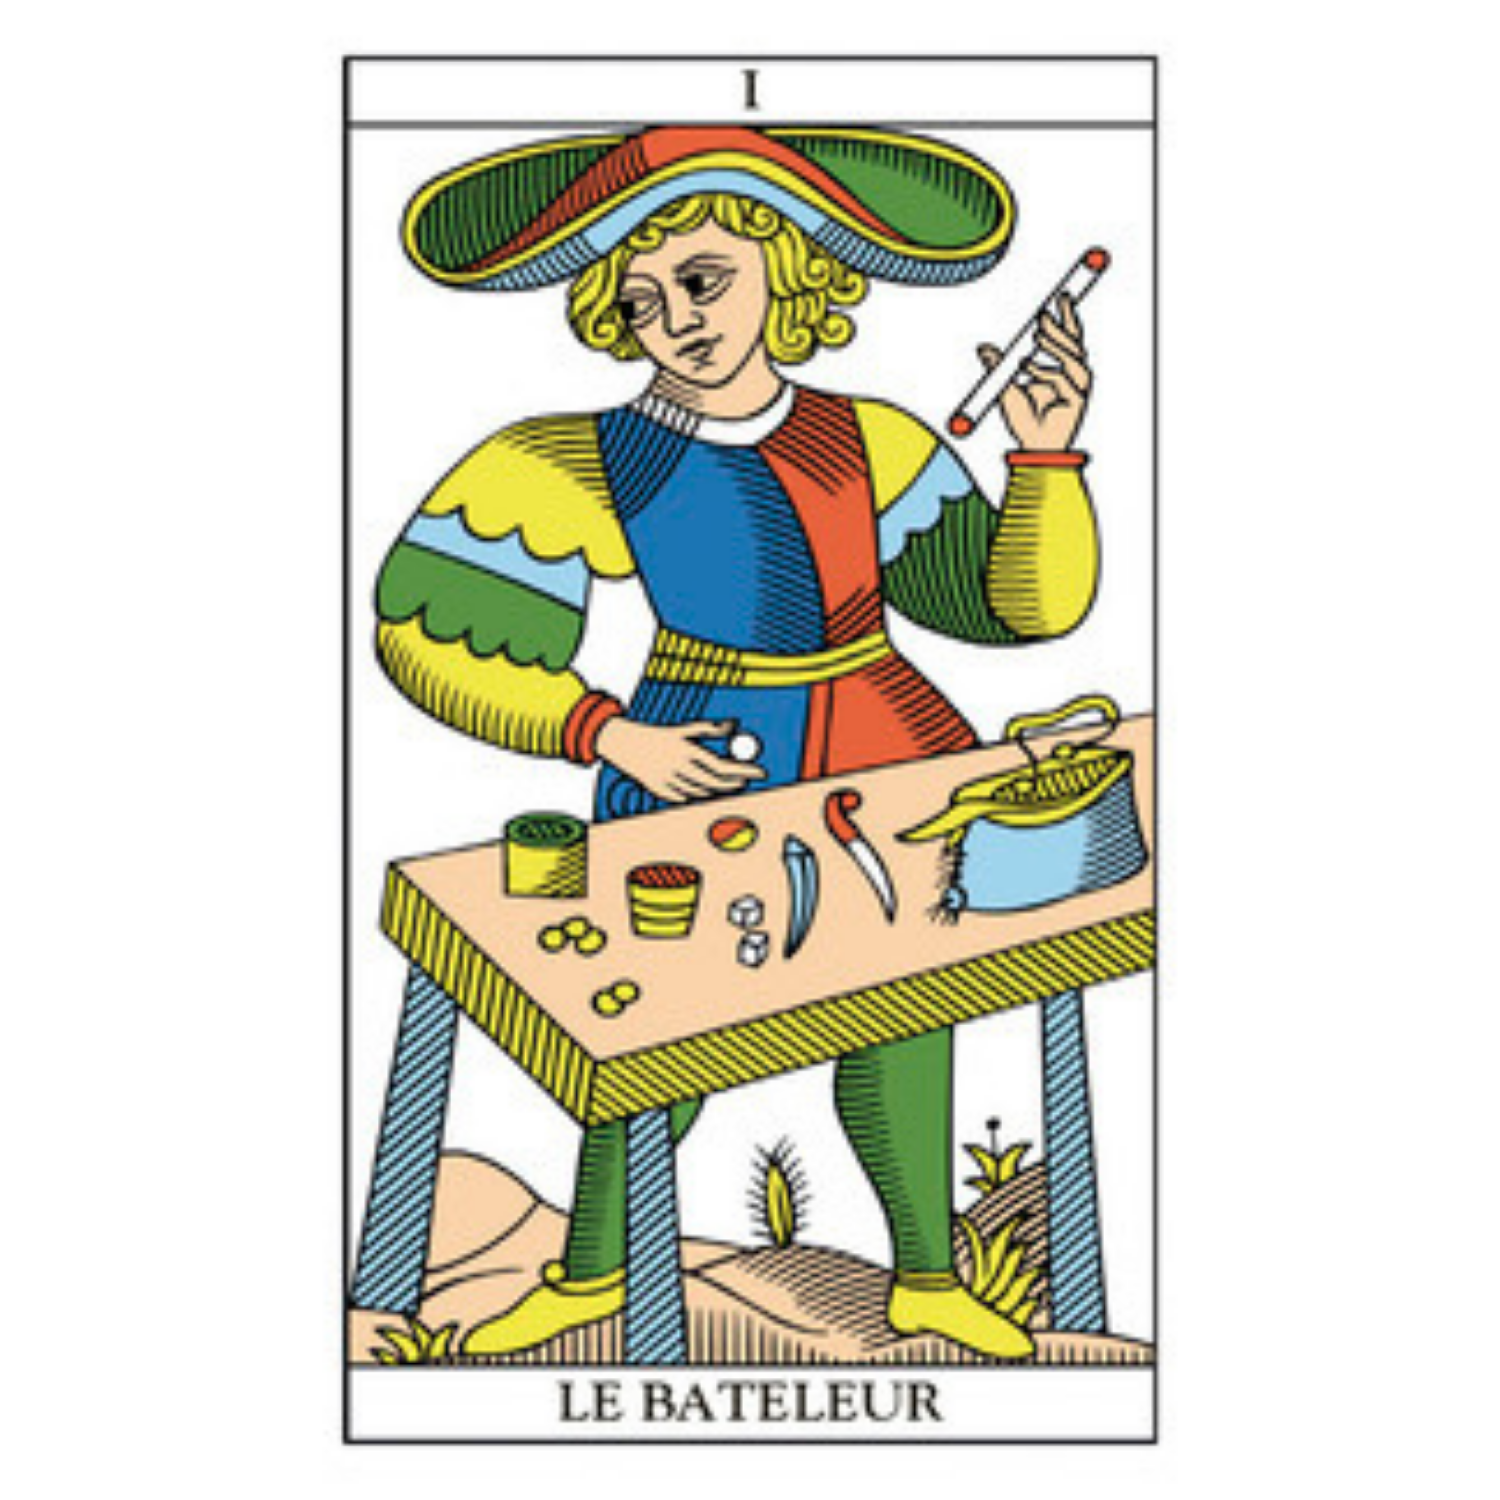 Tarot of Marseille Mini